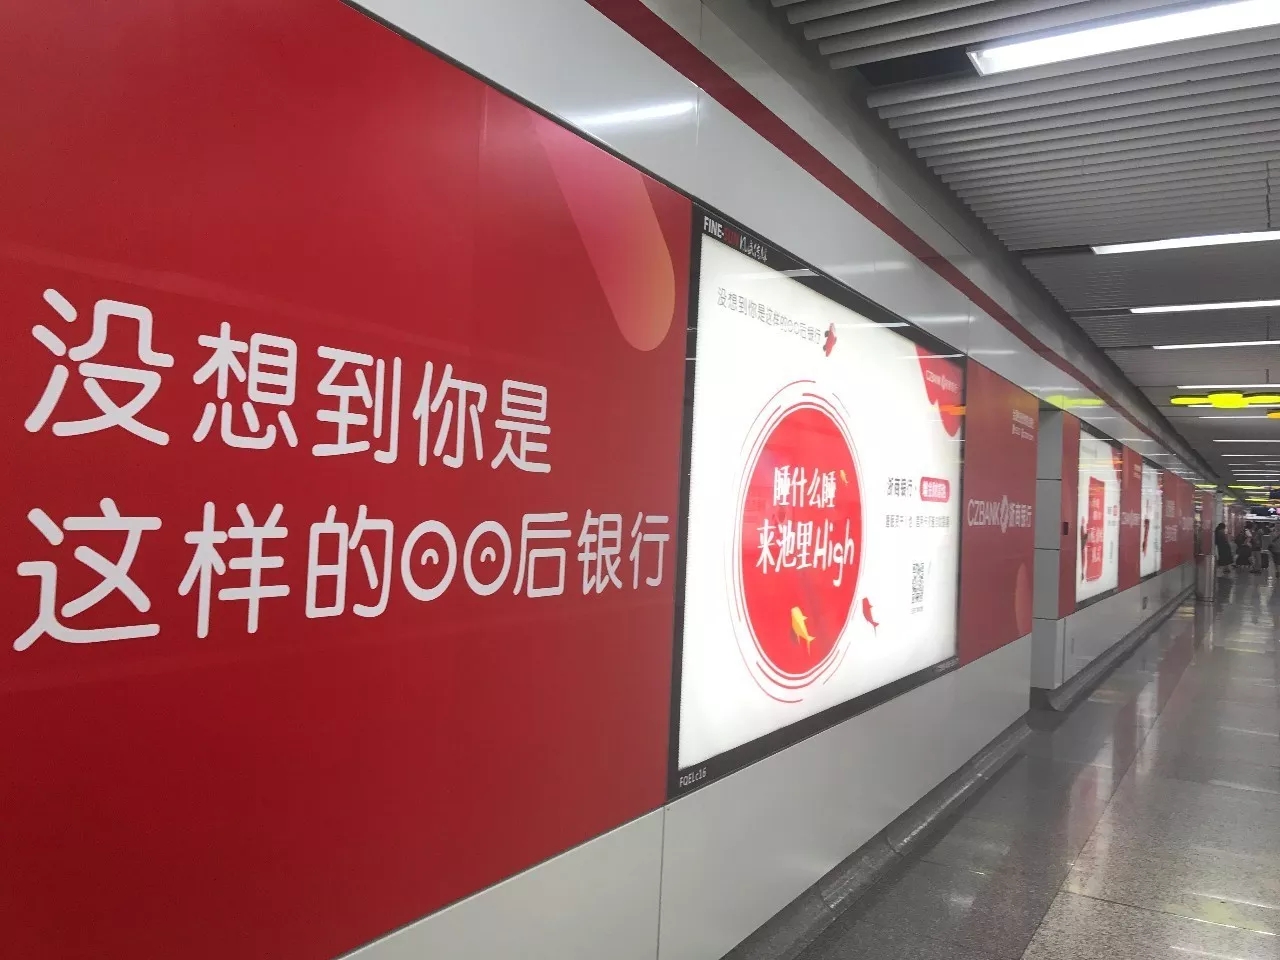 深圳地铁广告位价位有哪些影响因素呢